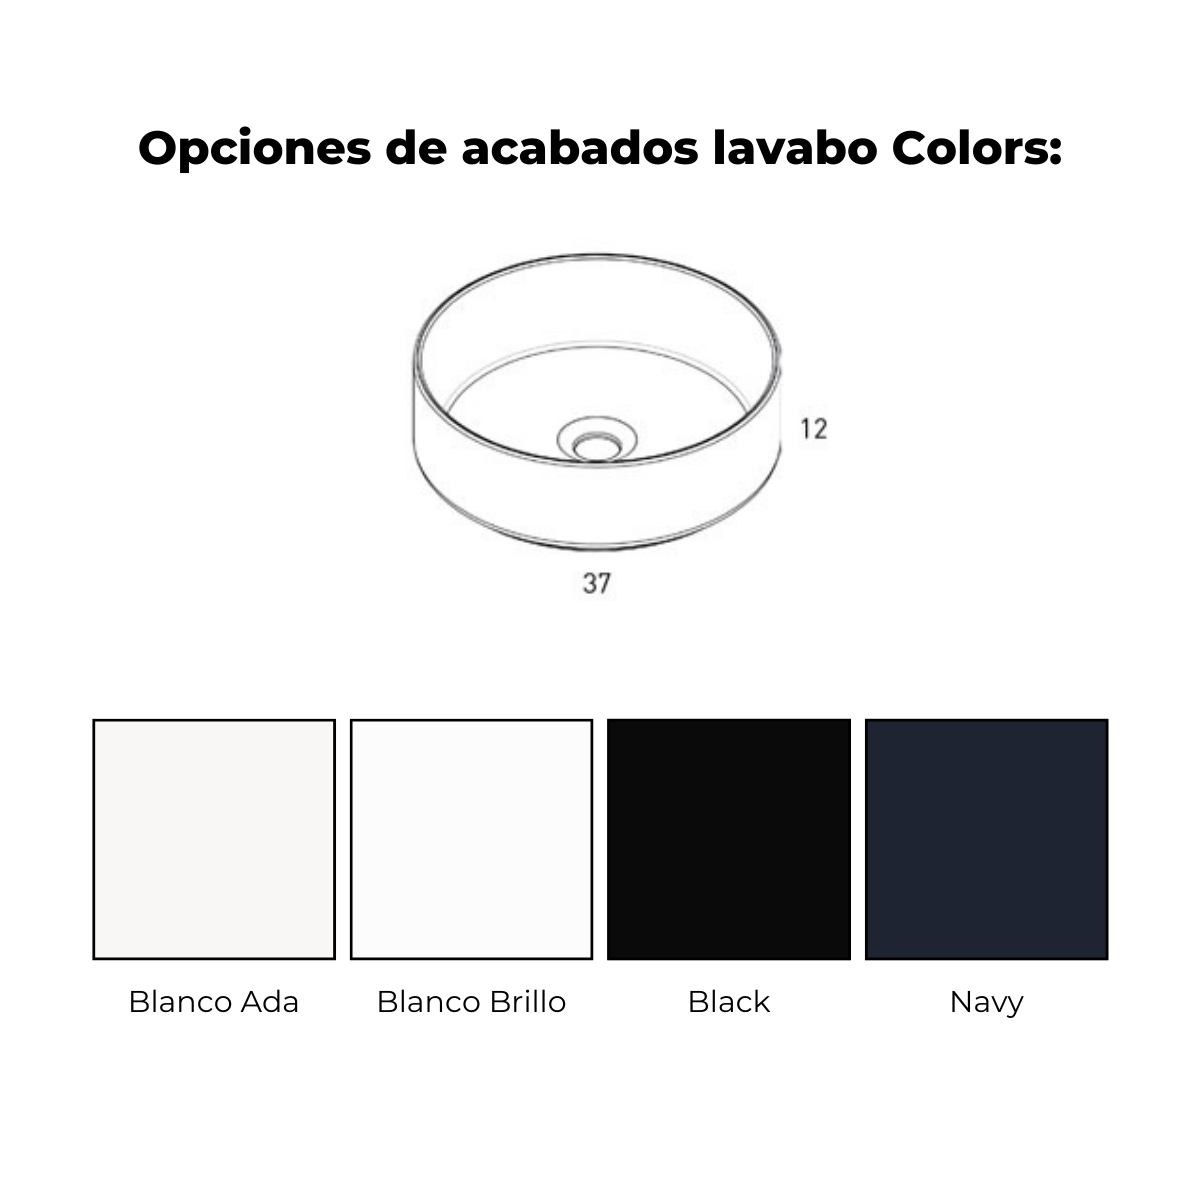 lavabo colors 1c1h eleven navy